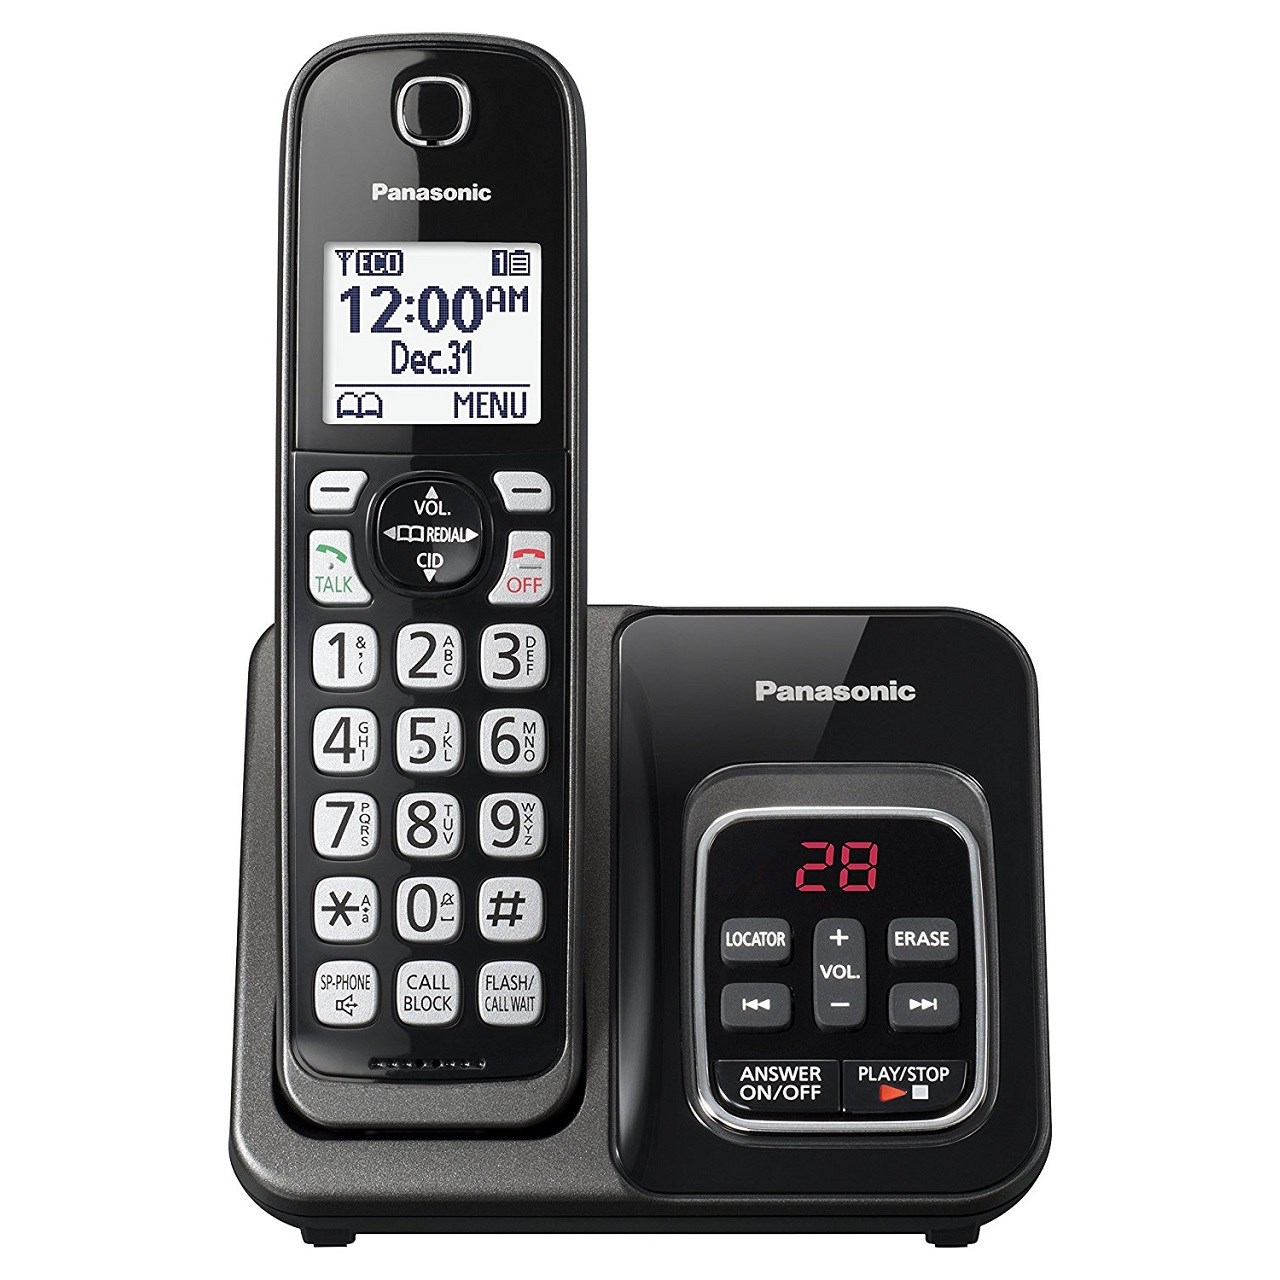 نکته خرید - قیمت روز تلفن بی سیم پاناسونیک مدل KX-TGD530 خرید